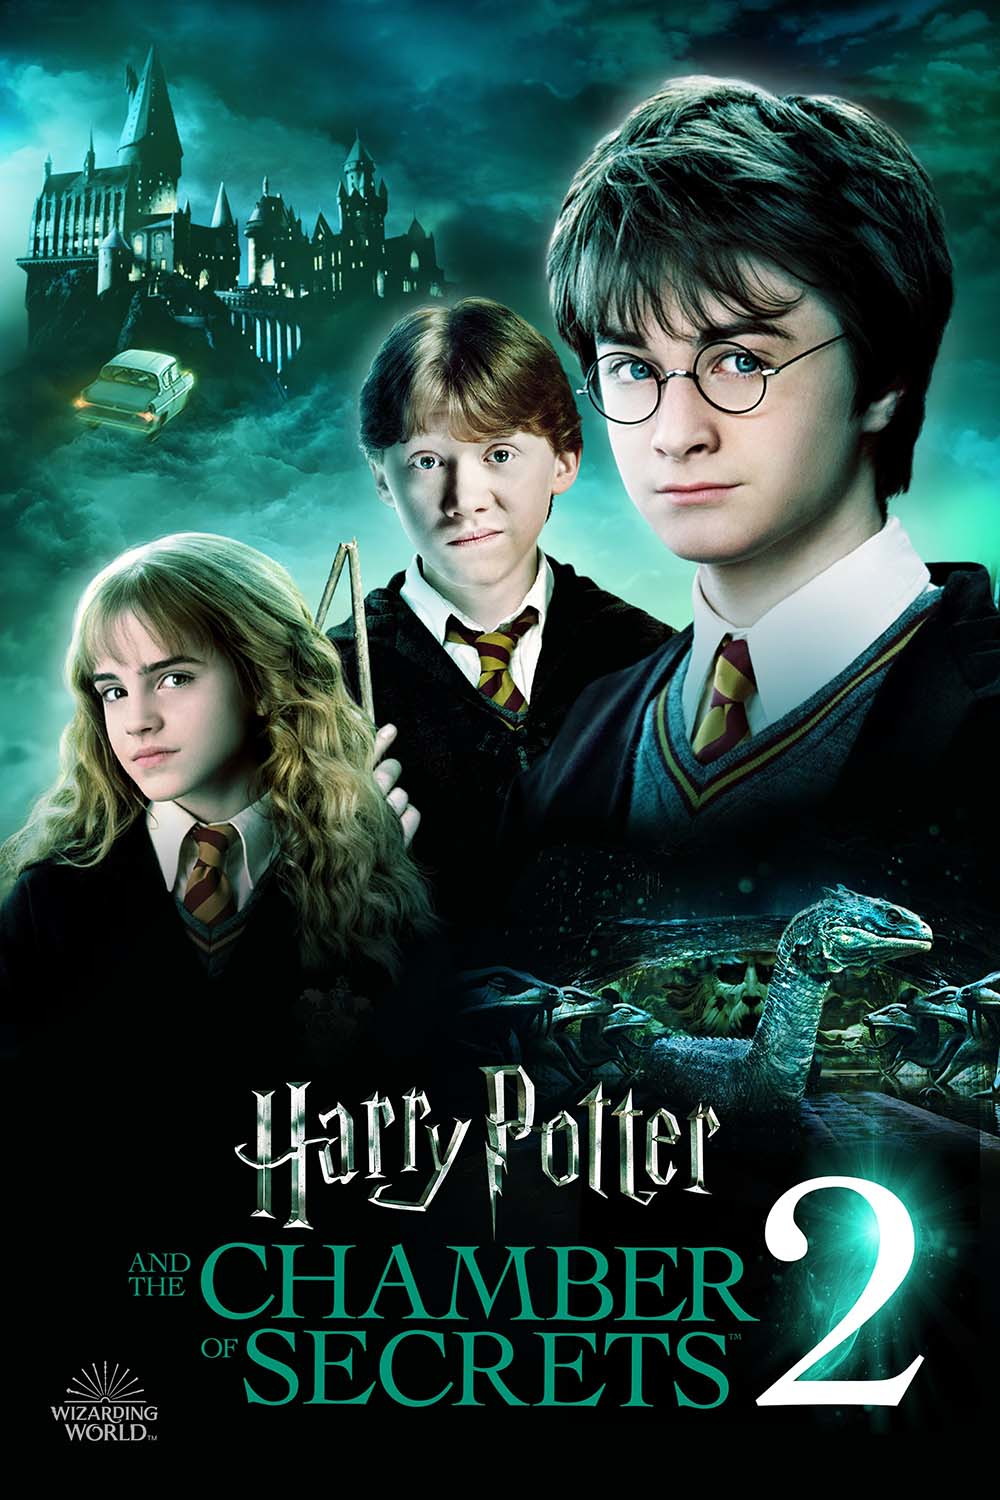 Filmes de Harry Potter voltarão a ser exibidos nos cinemas - Canaltech